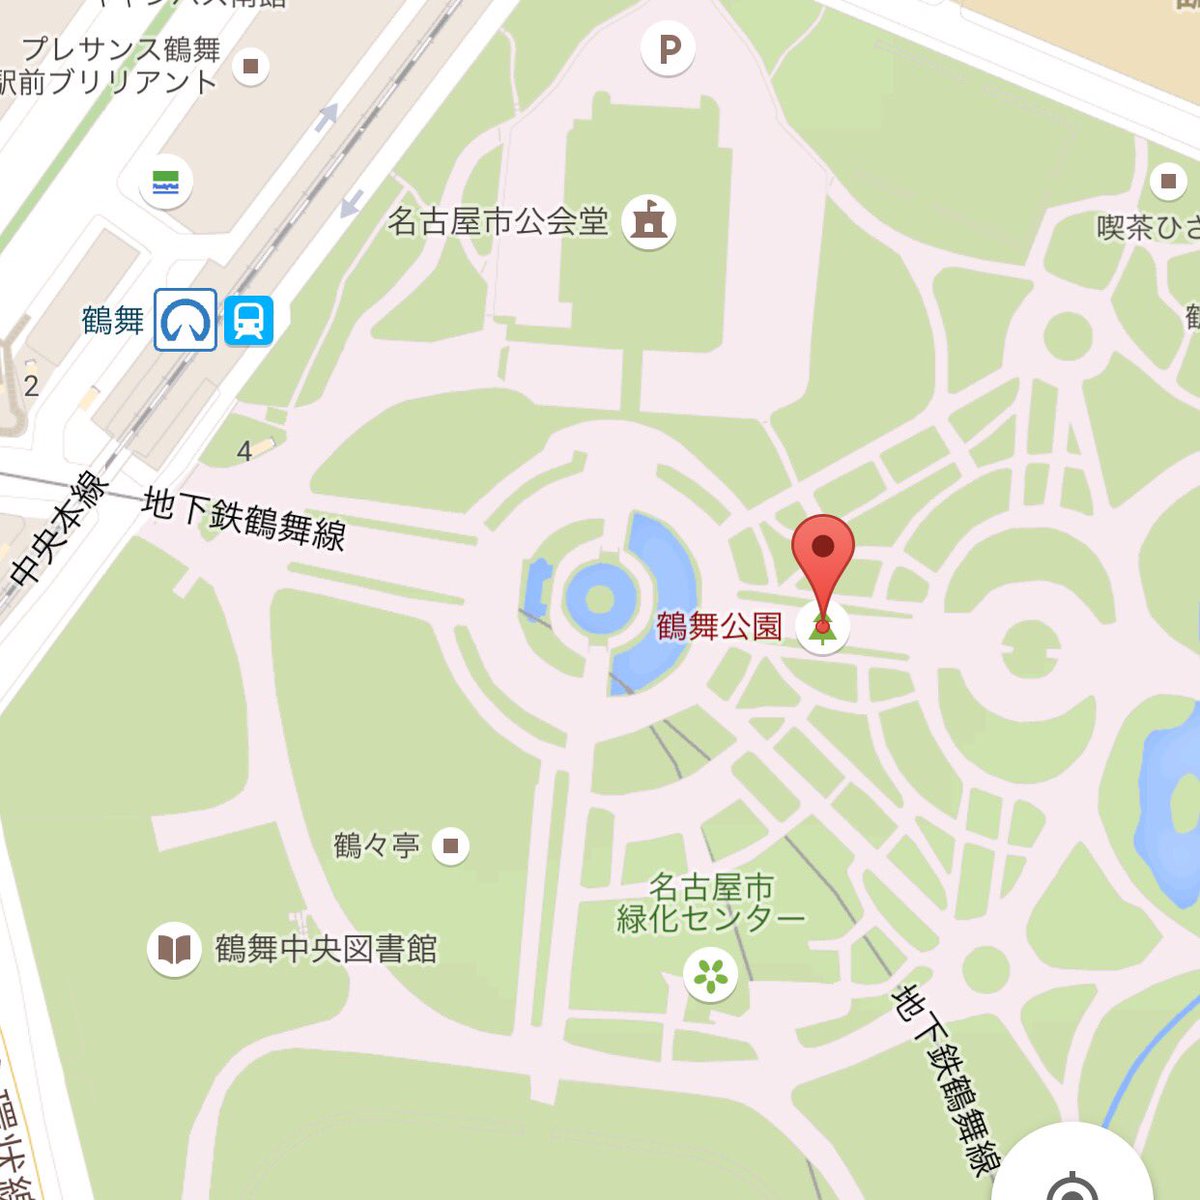 三年二組 名古屋の鶴舞公園は噴水がモンスターボールの形だからな そりゃポケモンgoの聖地になるよ